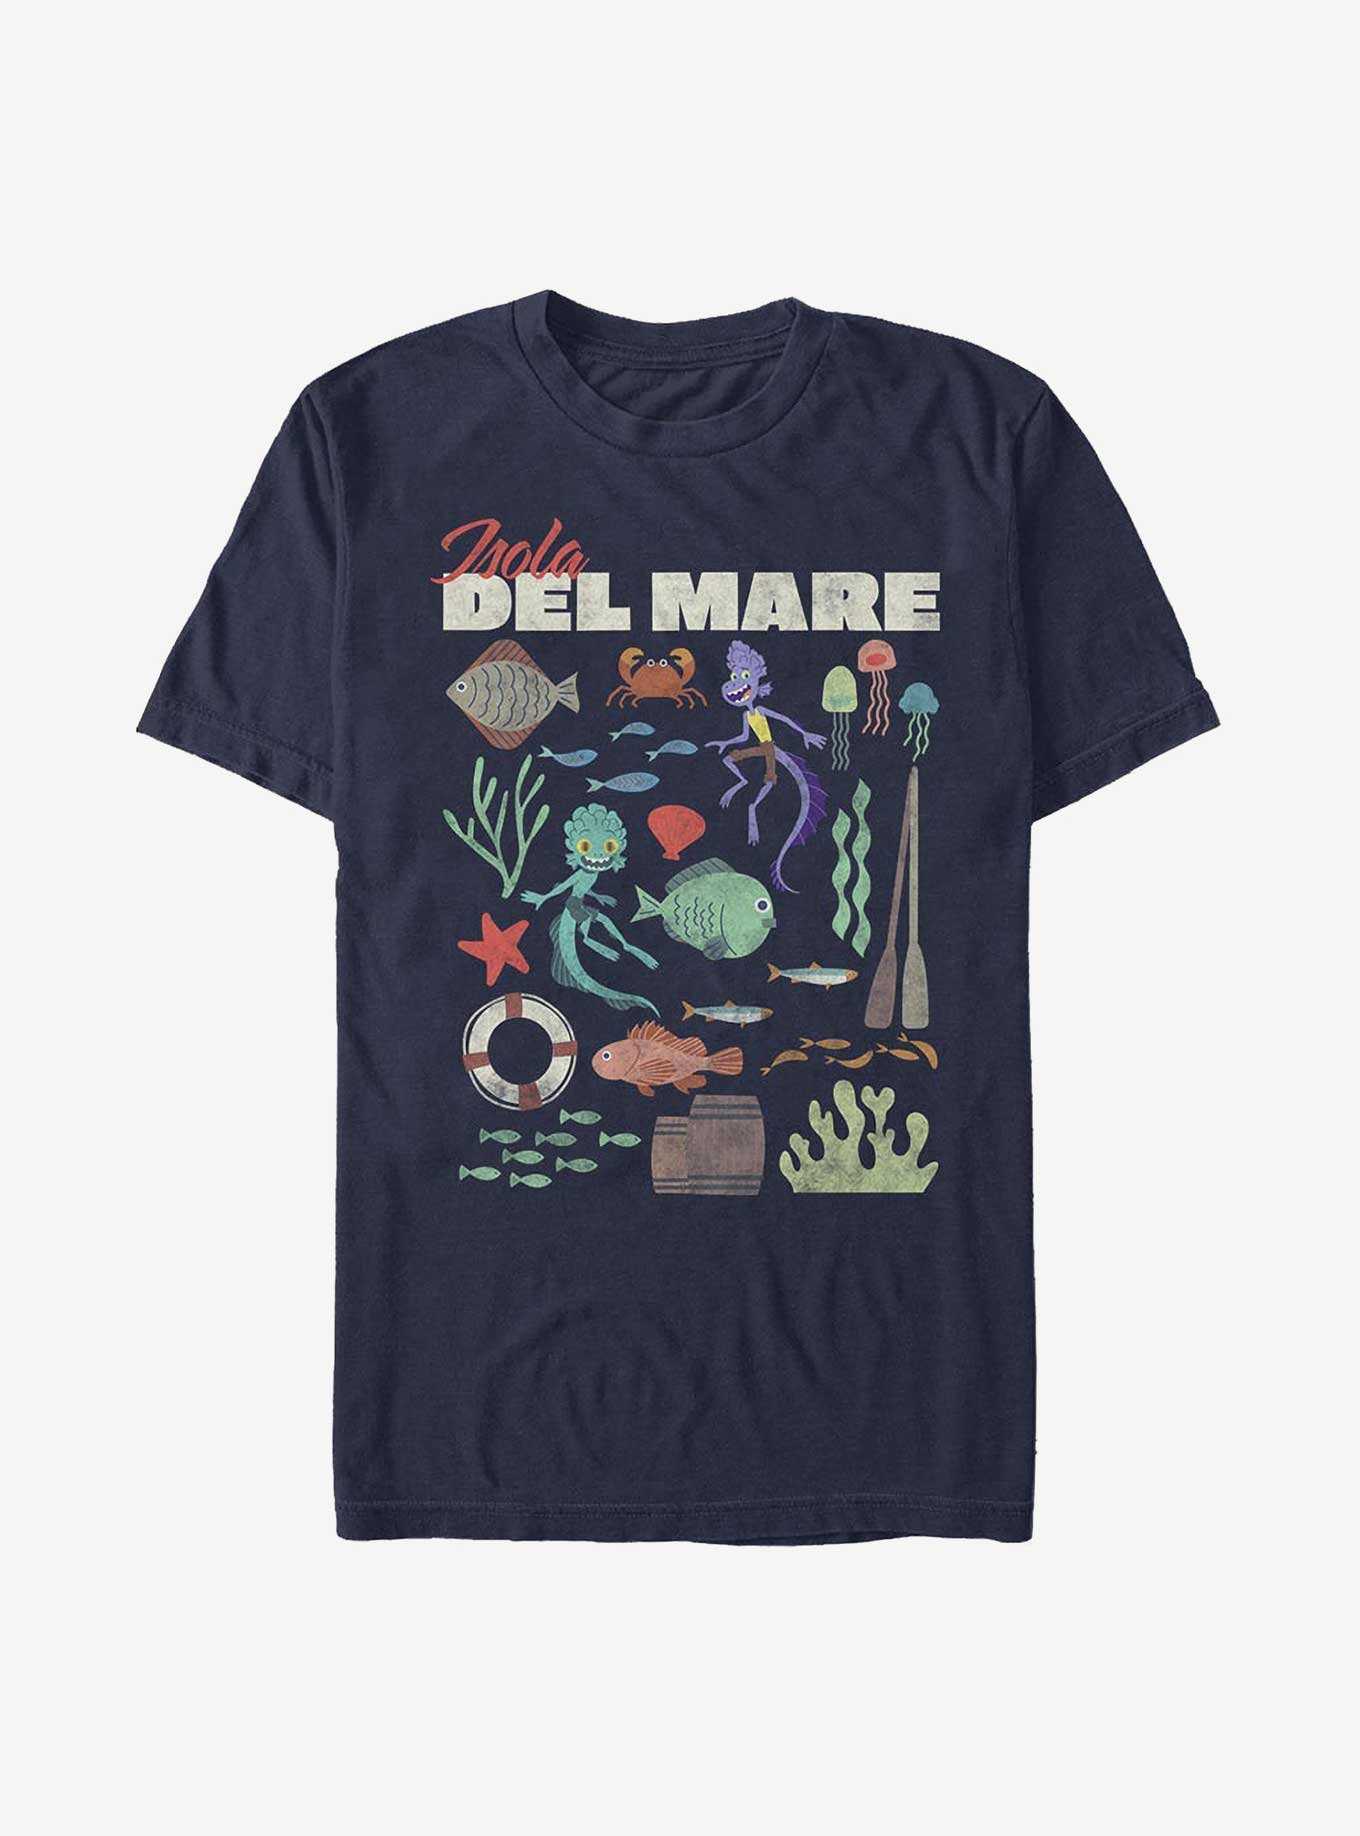 Disney Pixar Luca Isola Del Mare Sea Icons T-Shirt, , hi-res